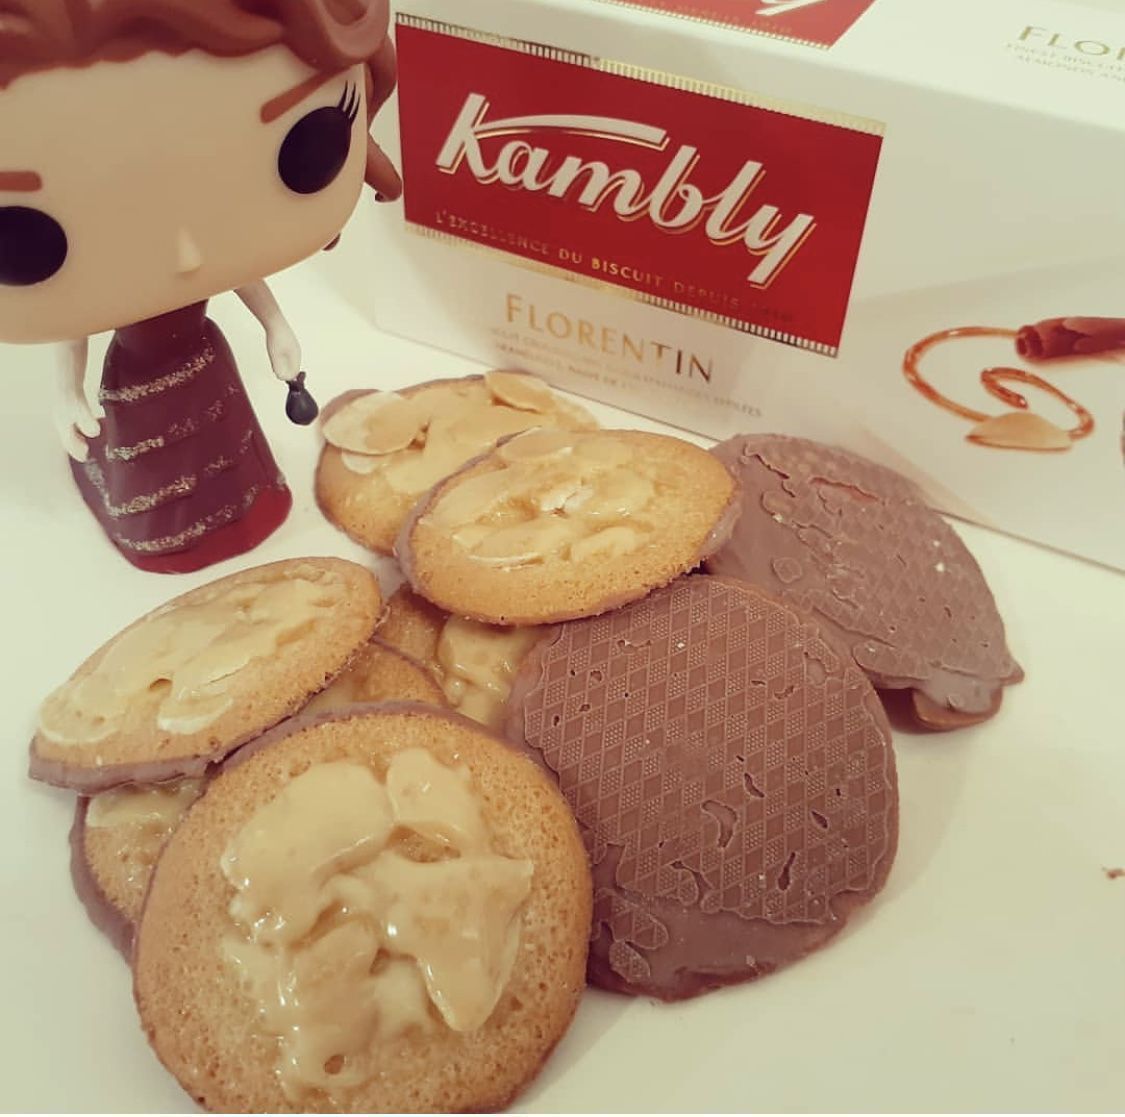 Печенье Kambly "Florentin" с миндалем в карамели и шоколадом 100г